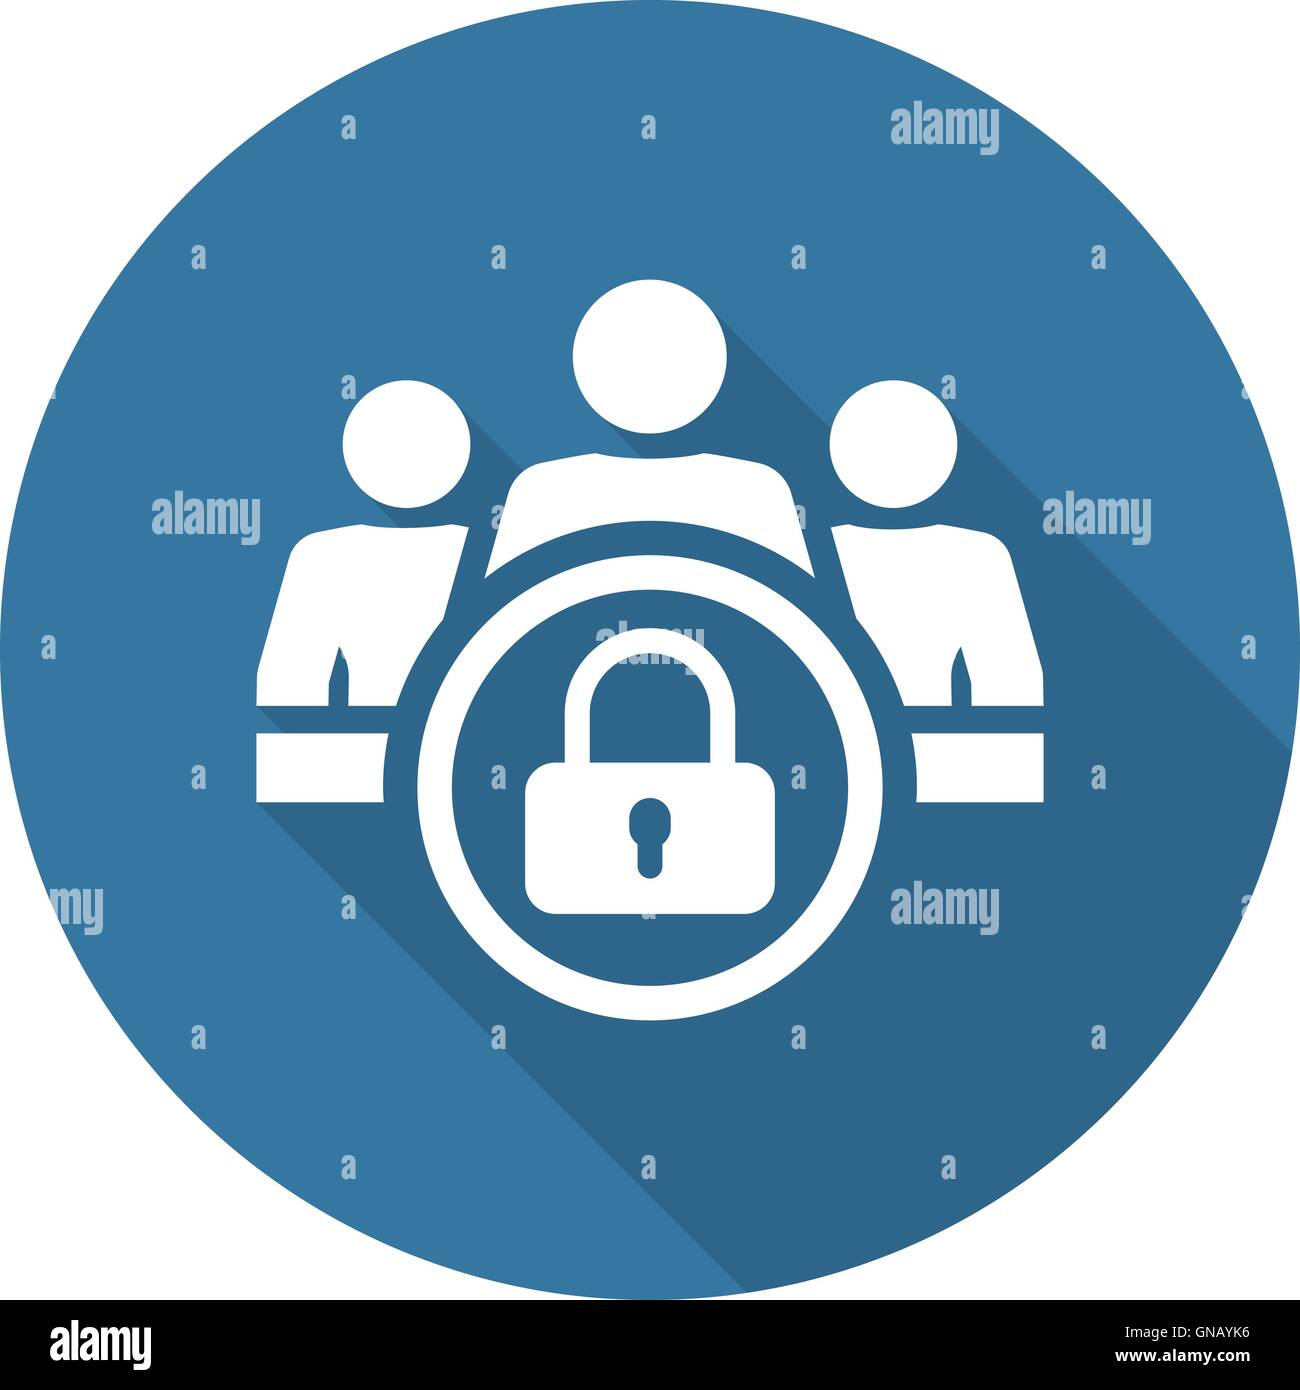 Protezione dei dati personali e la relativa icona. Design piatto. Illustrazione Vettoriale